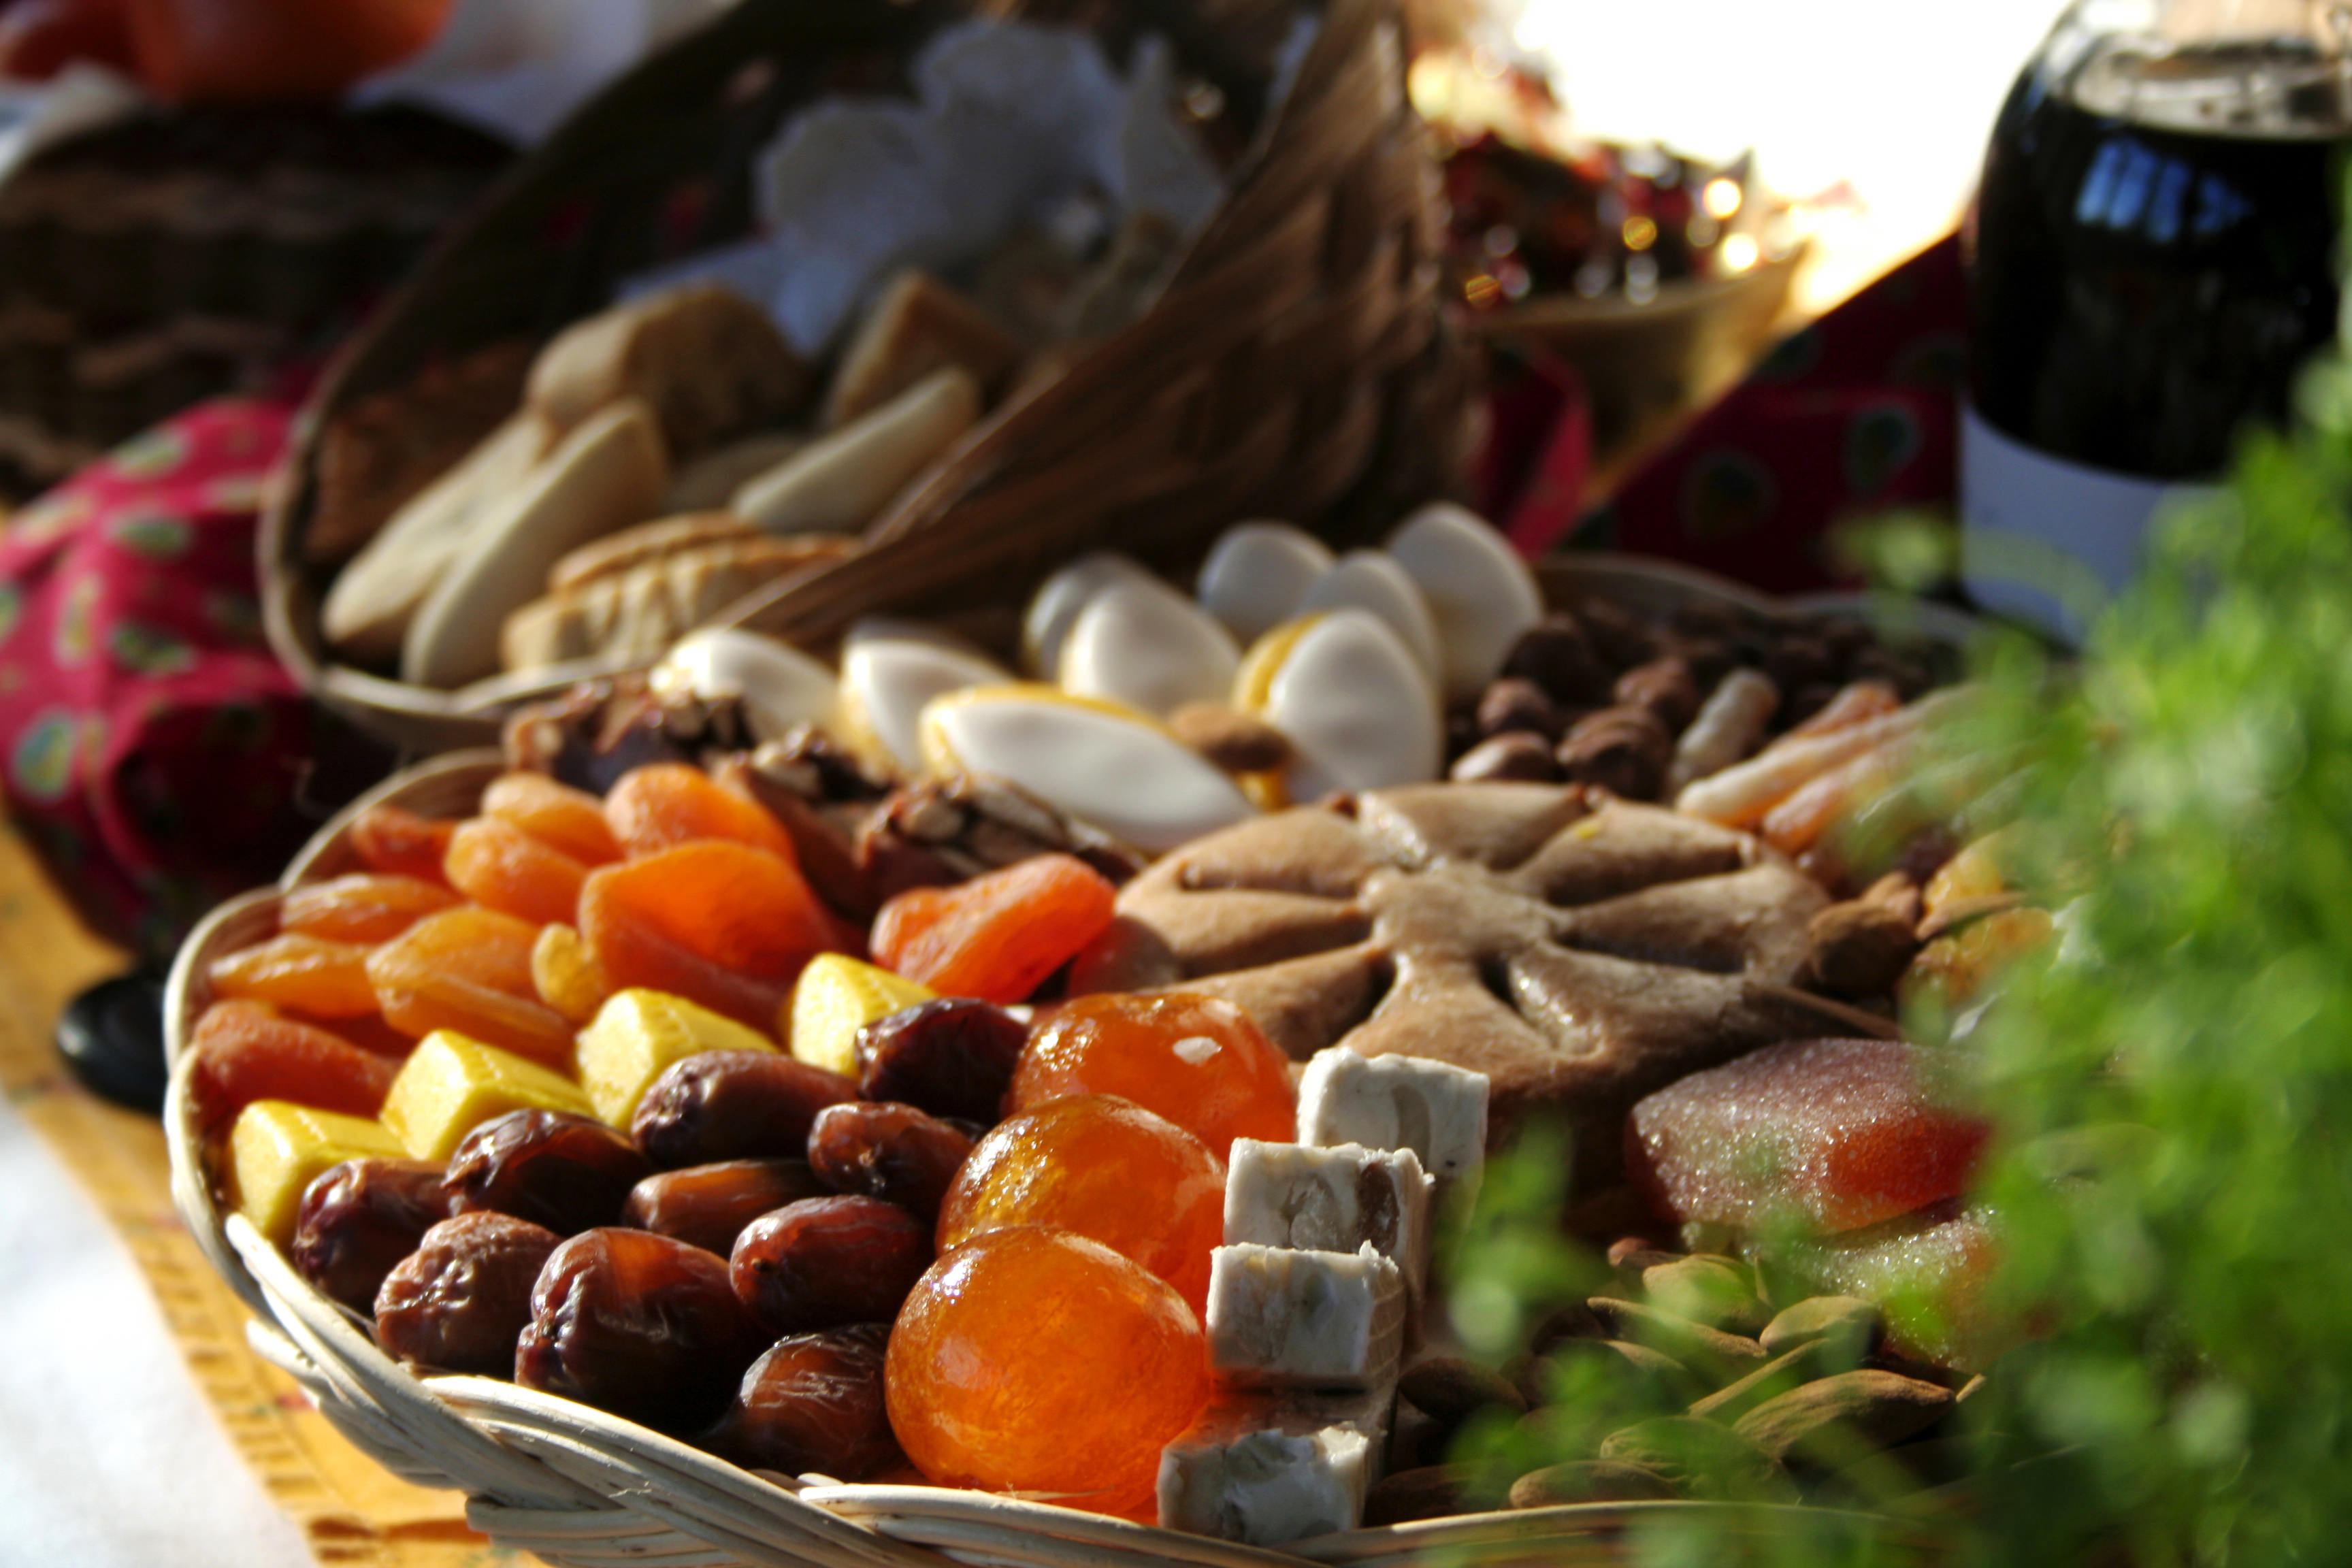 Liste des 13 desserts de Provence noel fêtes noix figues sèches amandes